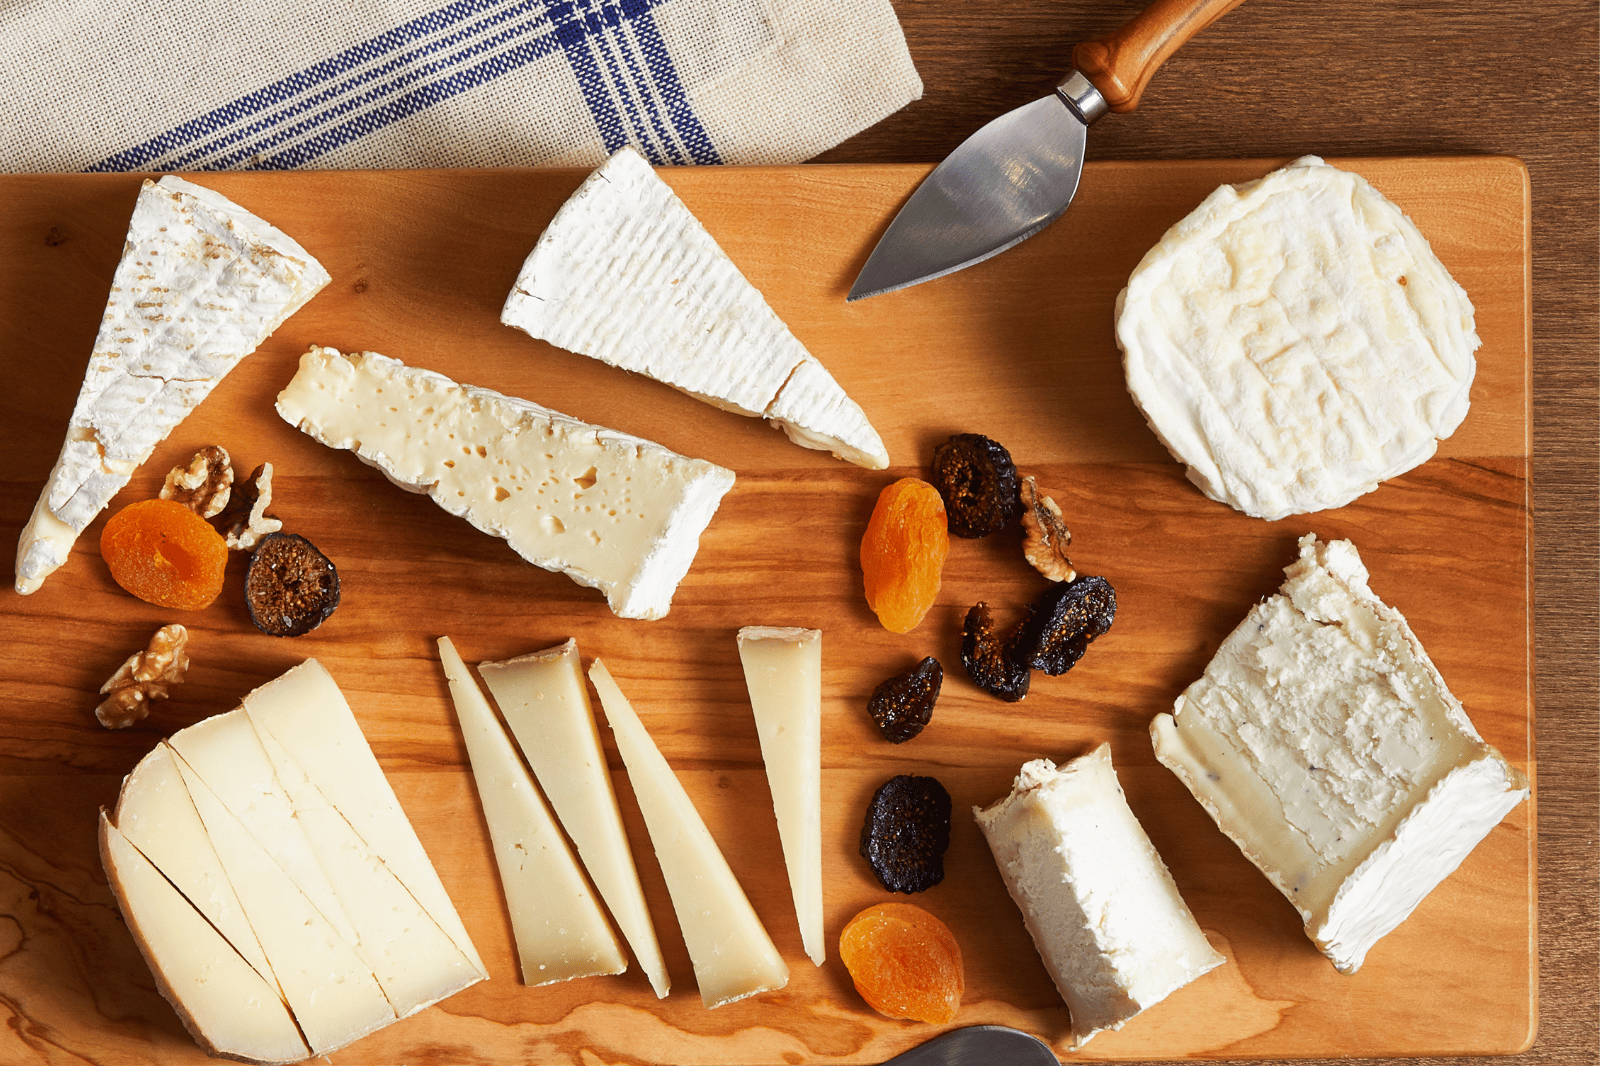 The Farm Cheese board